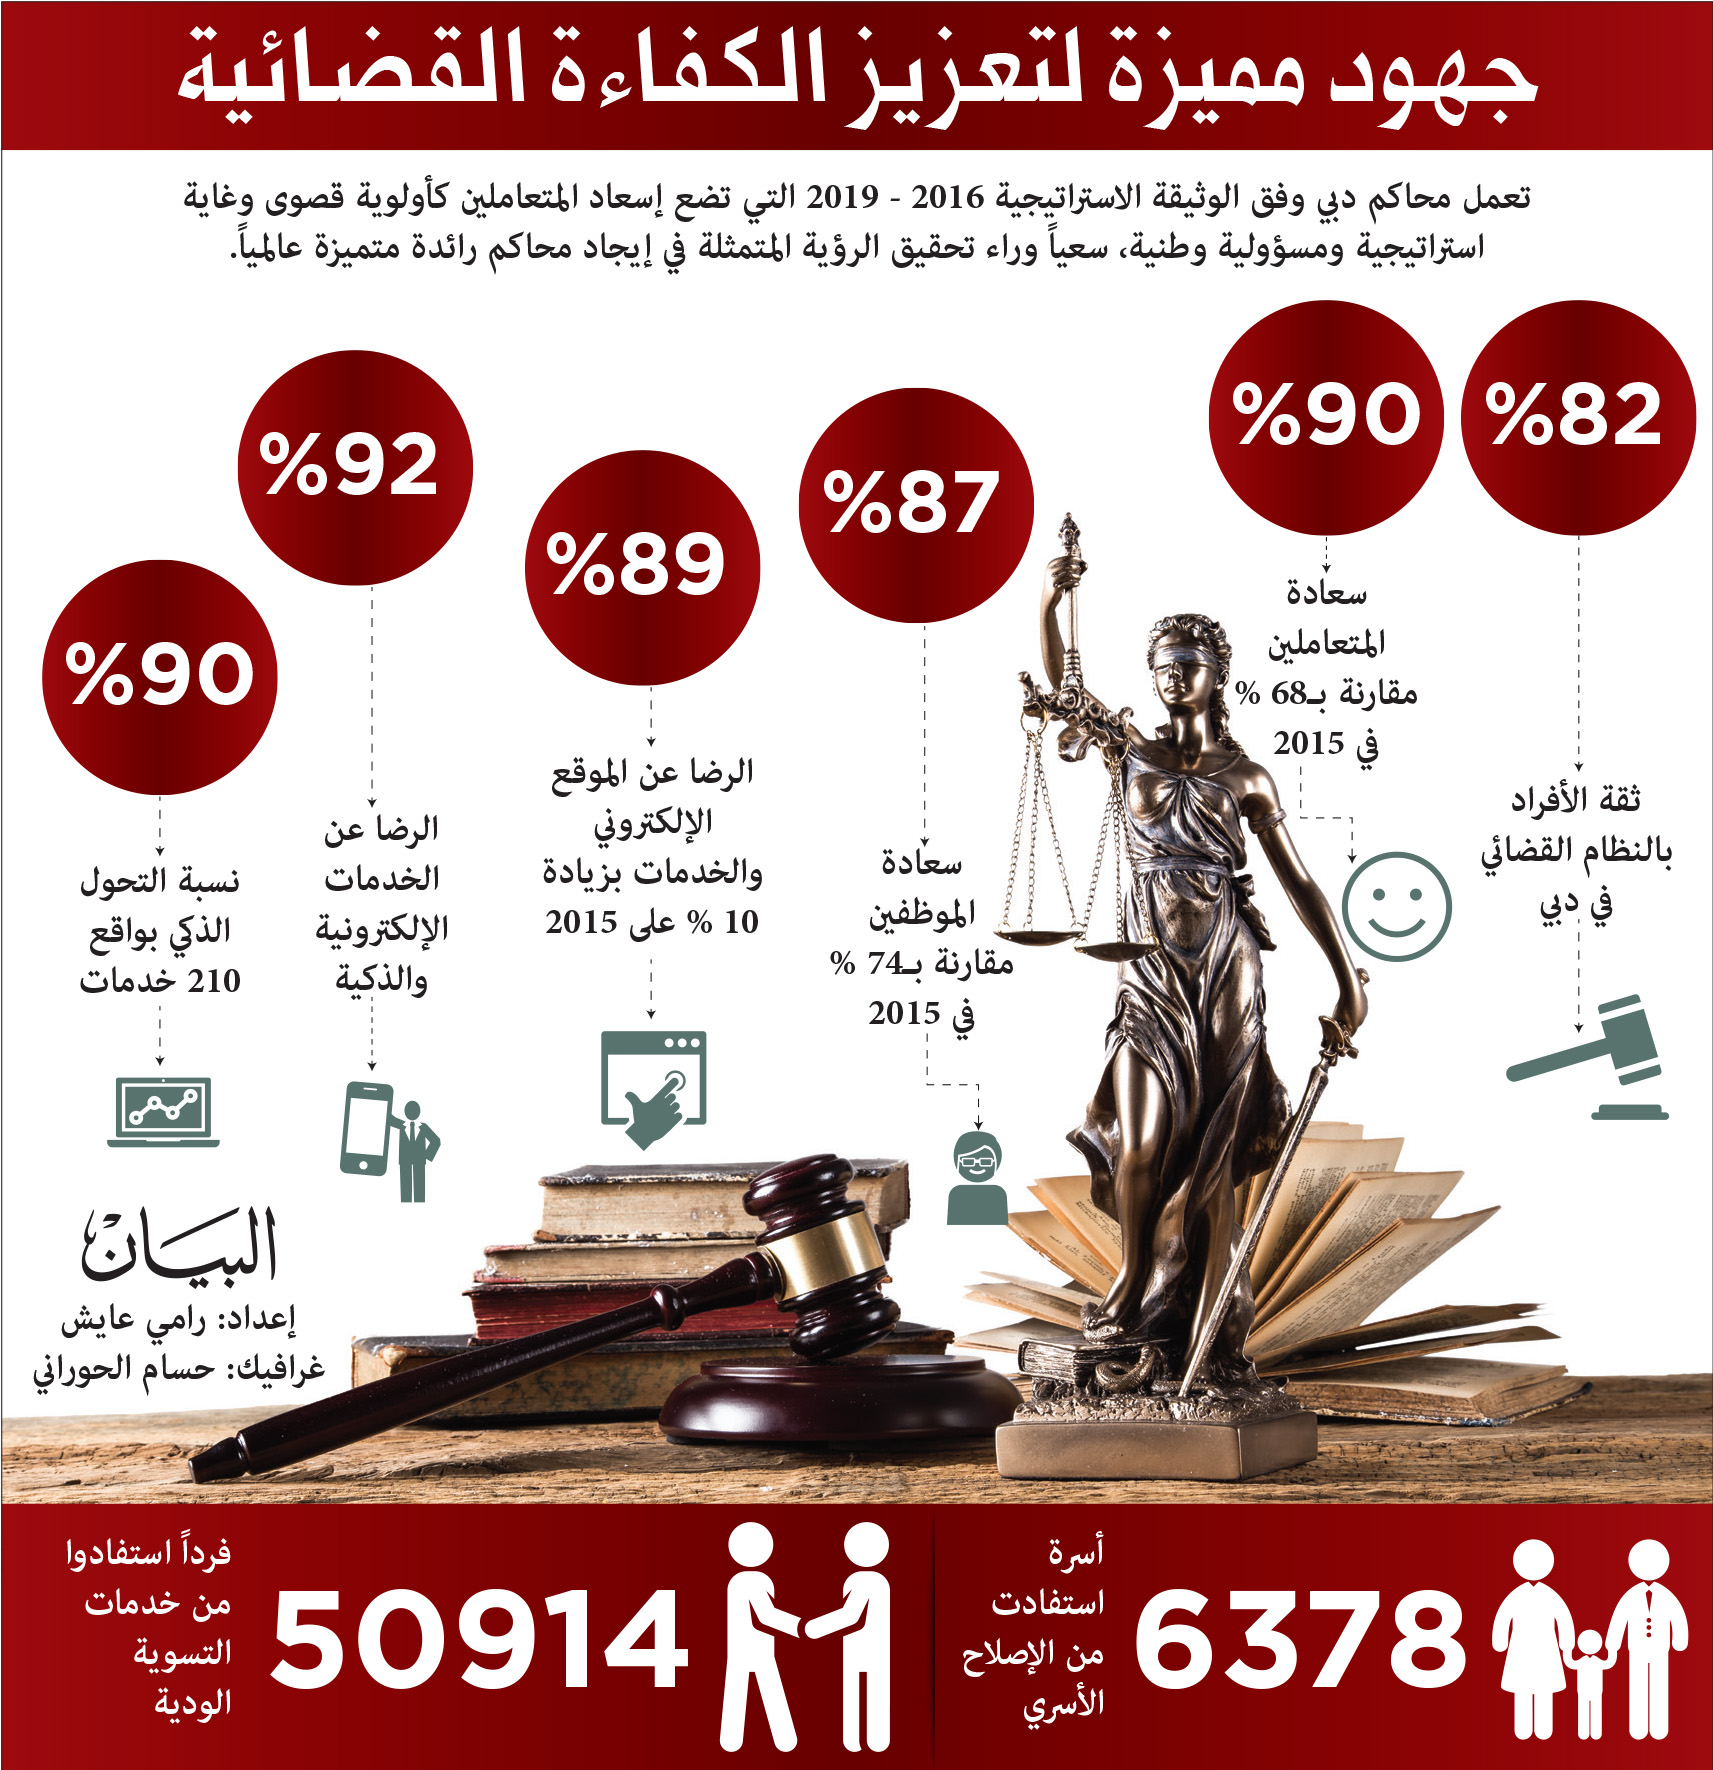 182 8 ألف قضية في محاكم دبي و90 سعادة المتعاملين عبر الإمارات أخبار وتقارير البيان